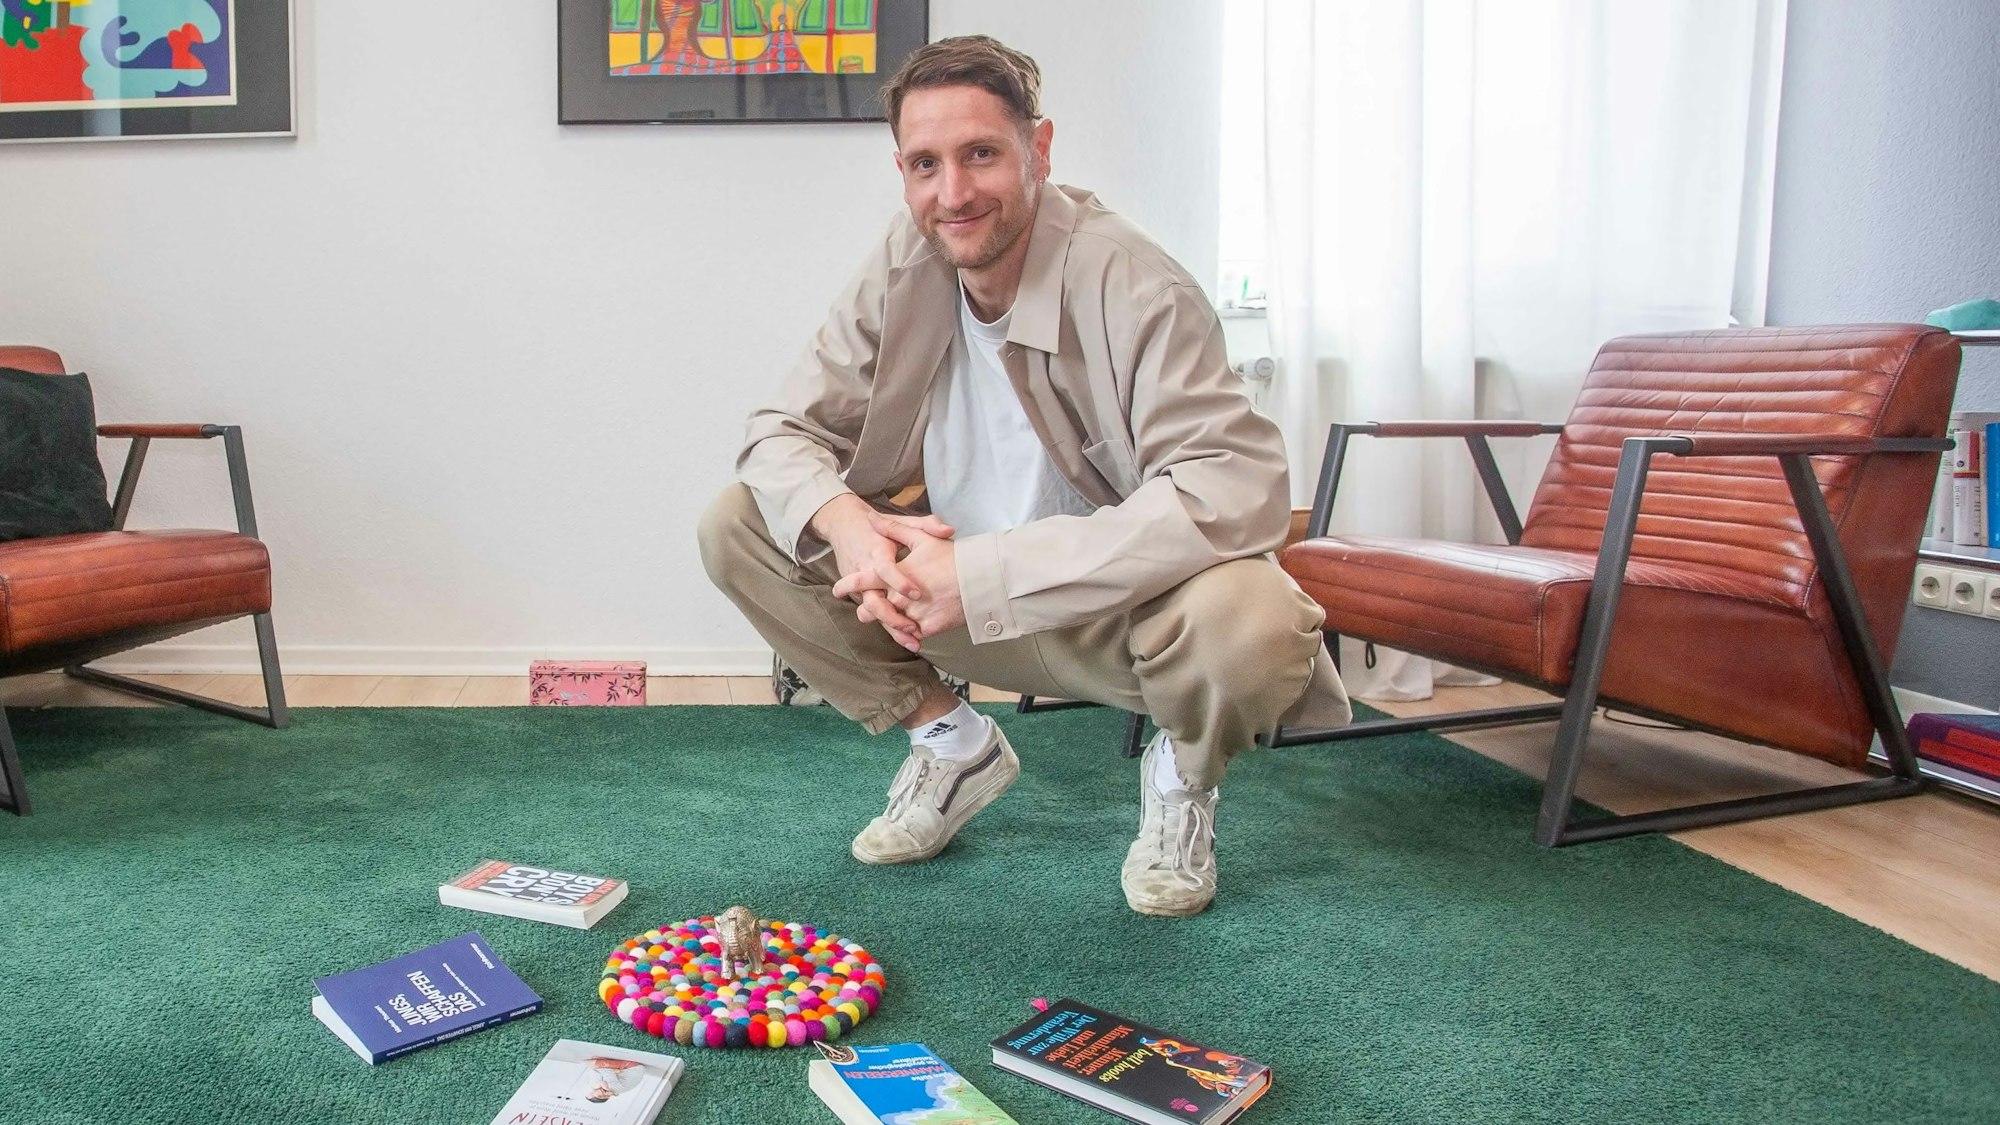 Therapeut Matthias Stinn in der Hocke auf einem grünen Teppich, vor sich hat er Bücher liegen.